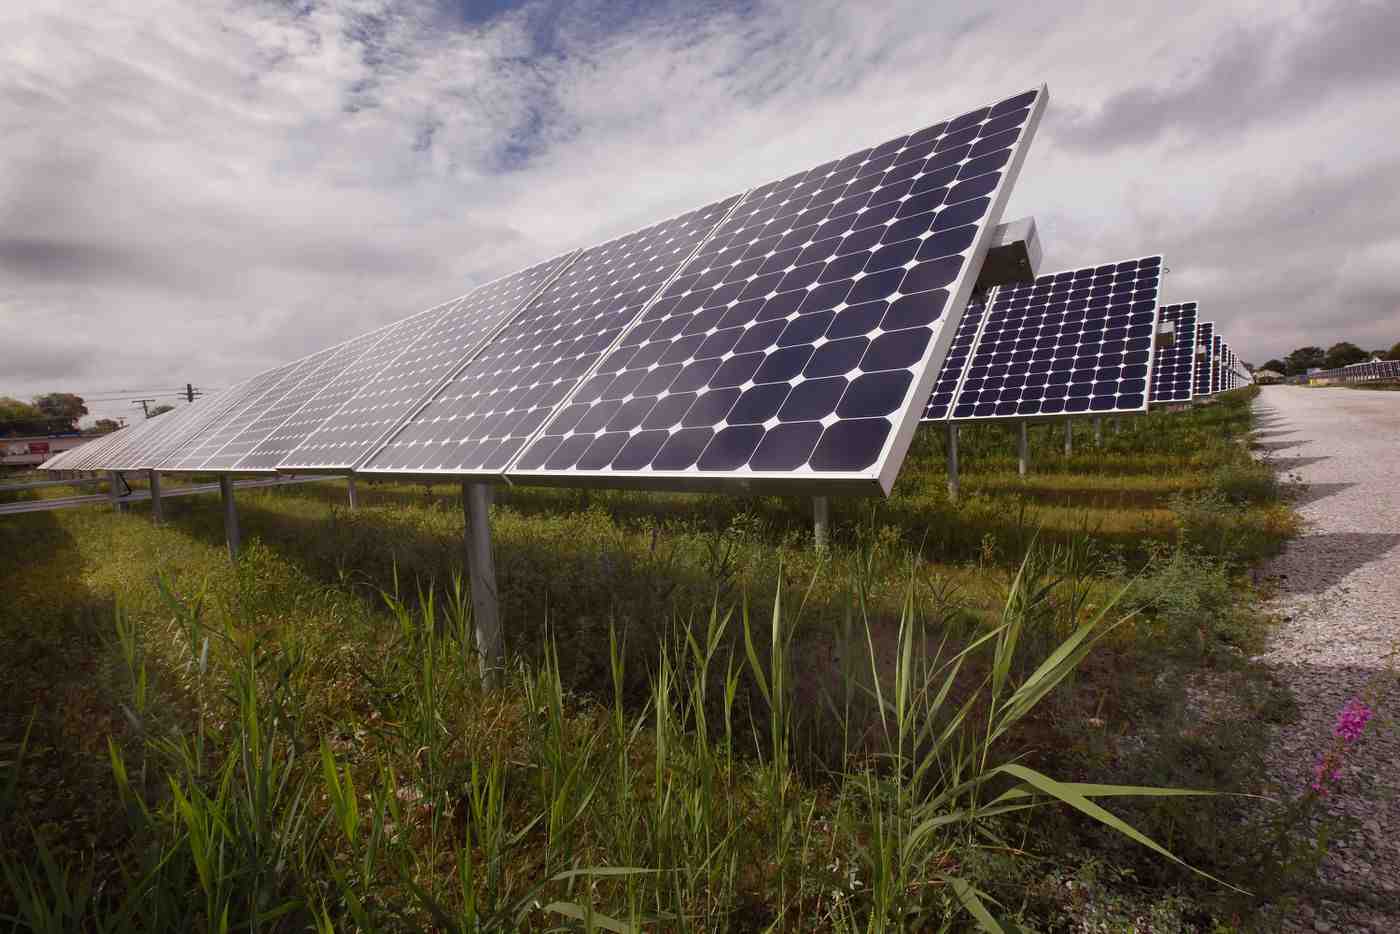 Are solar farms a good idea?